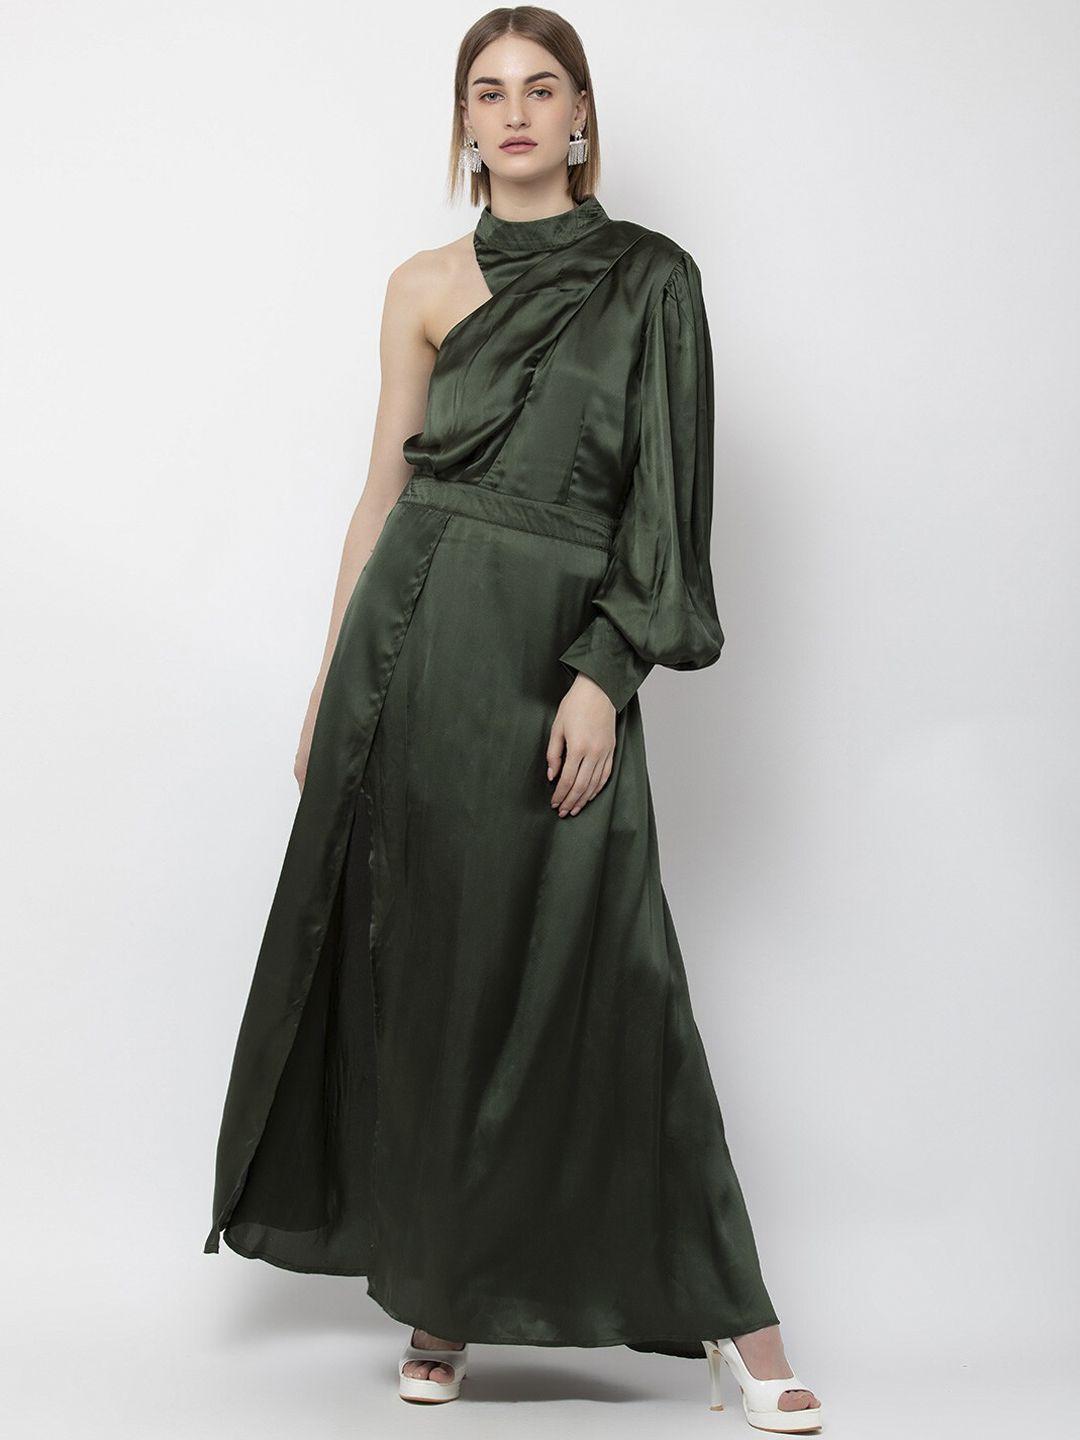 dodo-&-moa-women-olive-green-satin-maxi-dress